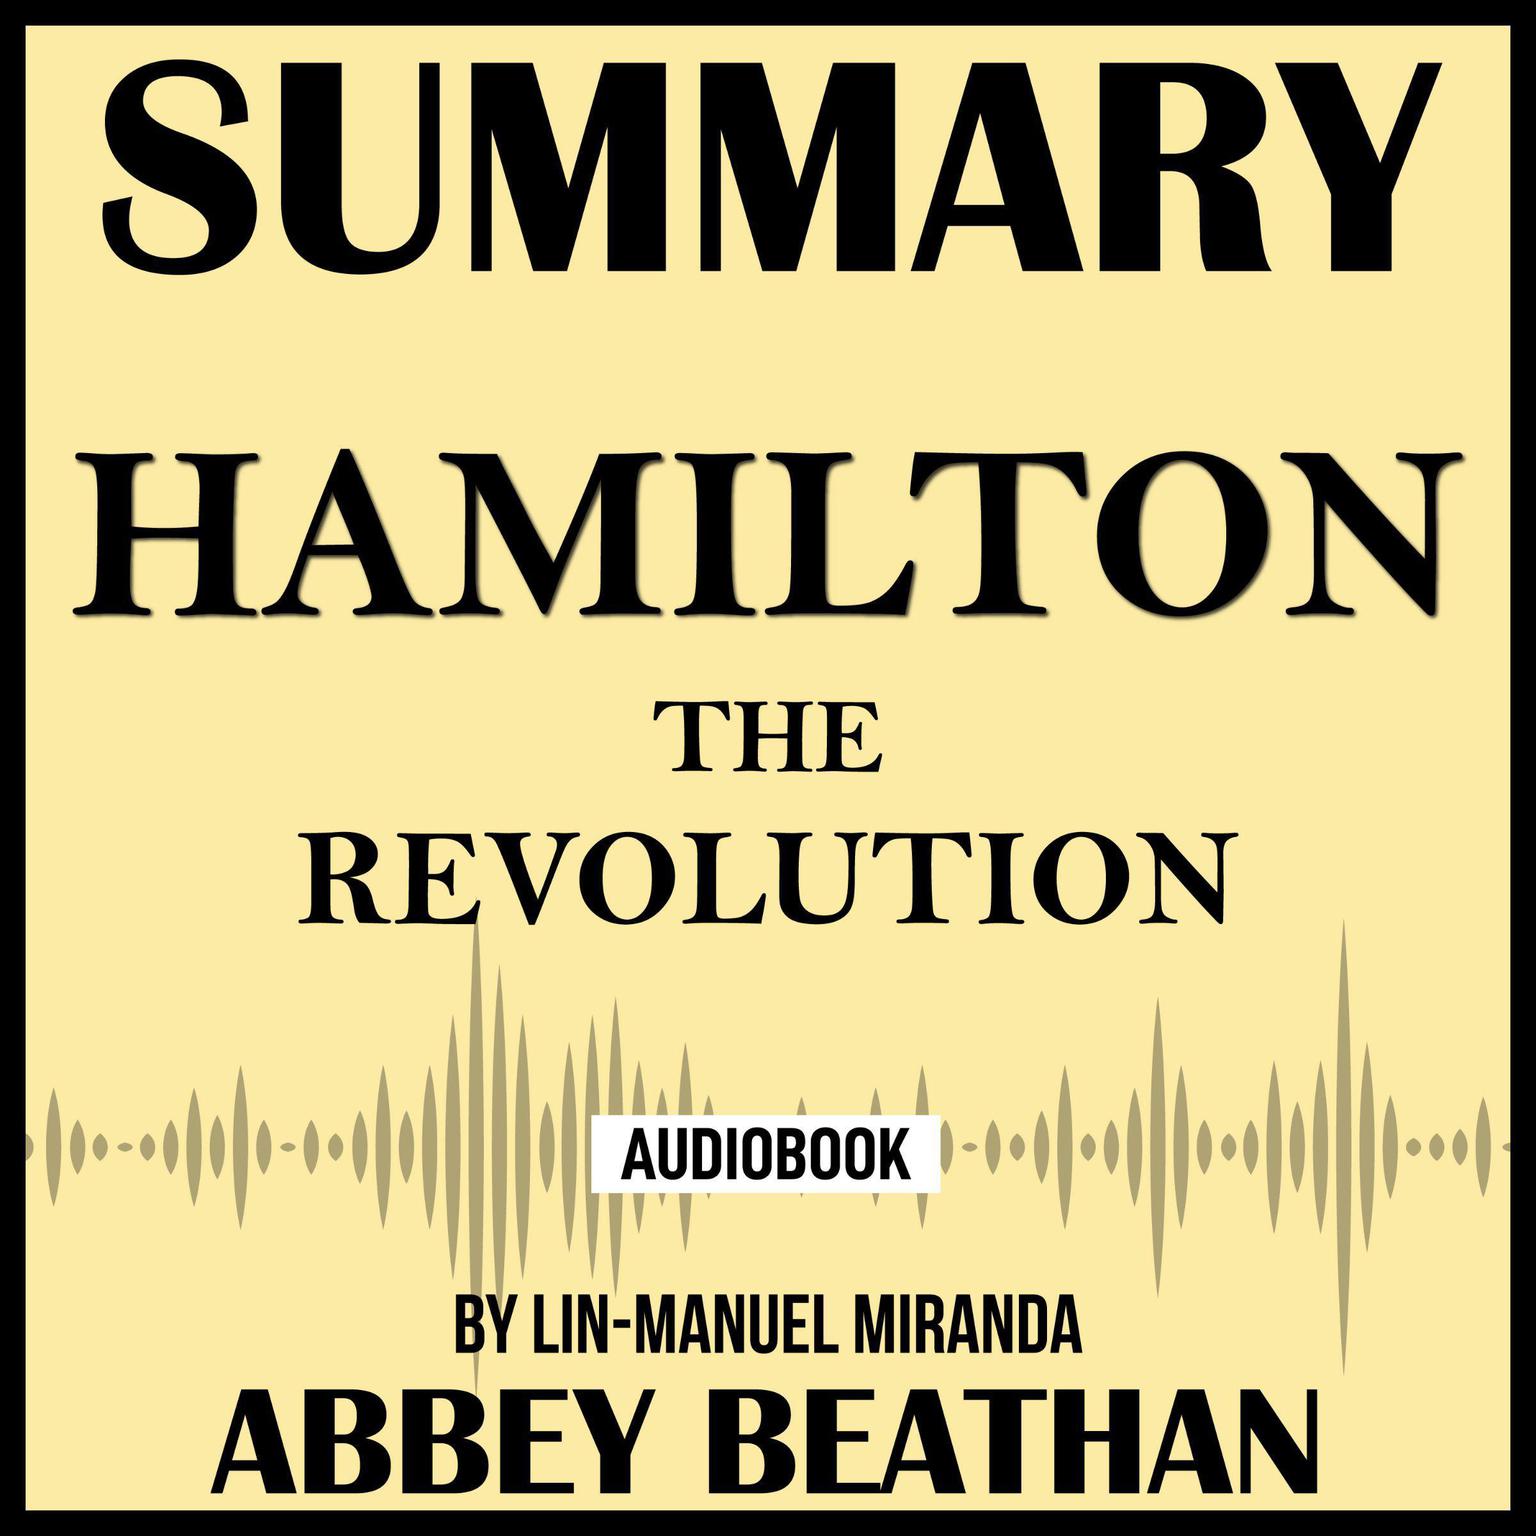 Summary of Hamilton: The Revolution by Lin-Manuel Miranda Audiobook, by Abbey Beathan